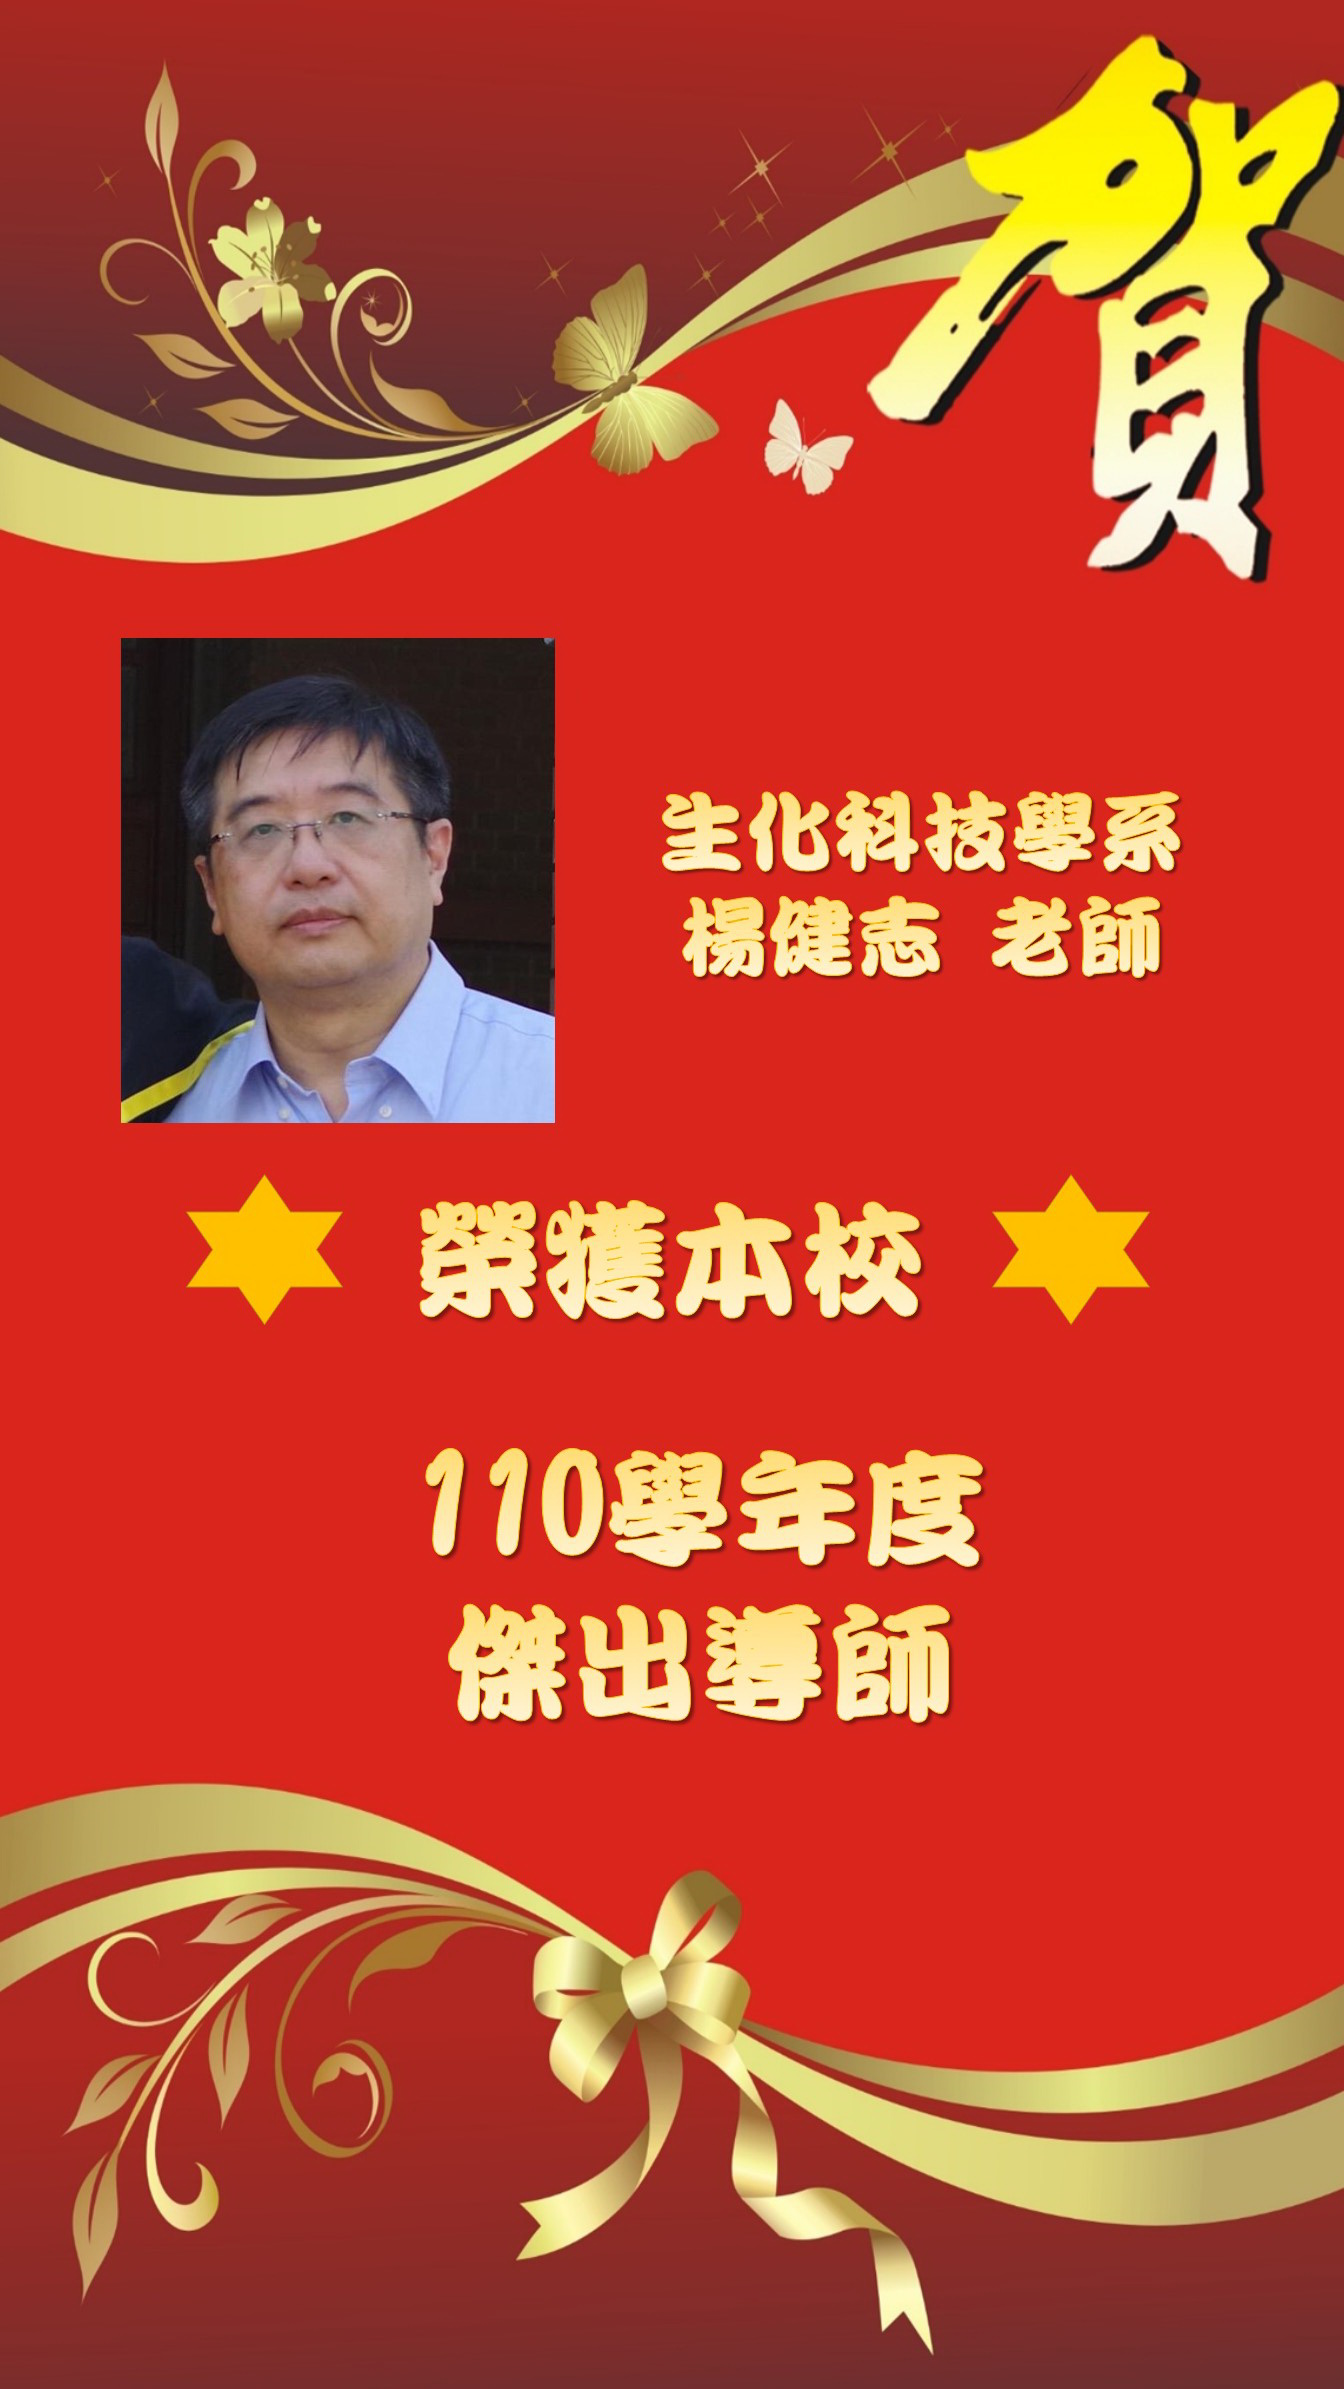 生化科技系楊健志老師榮獲110學年度傑出導師